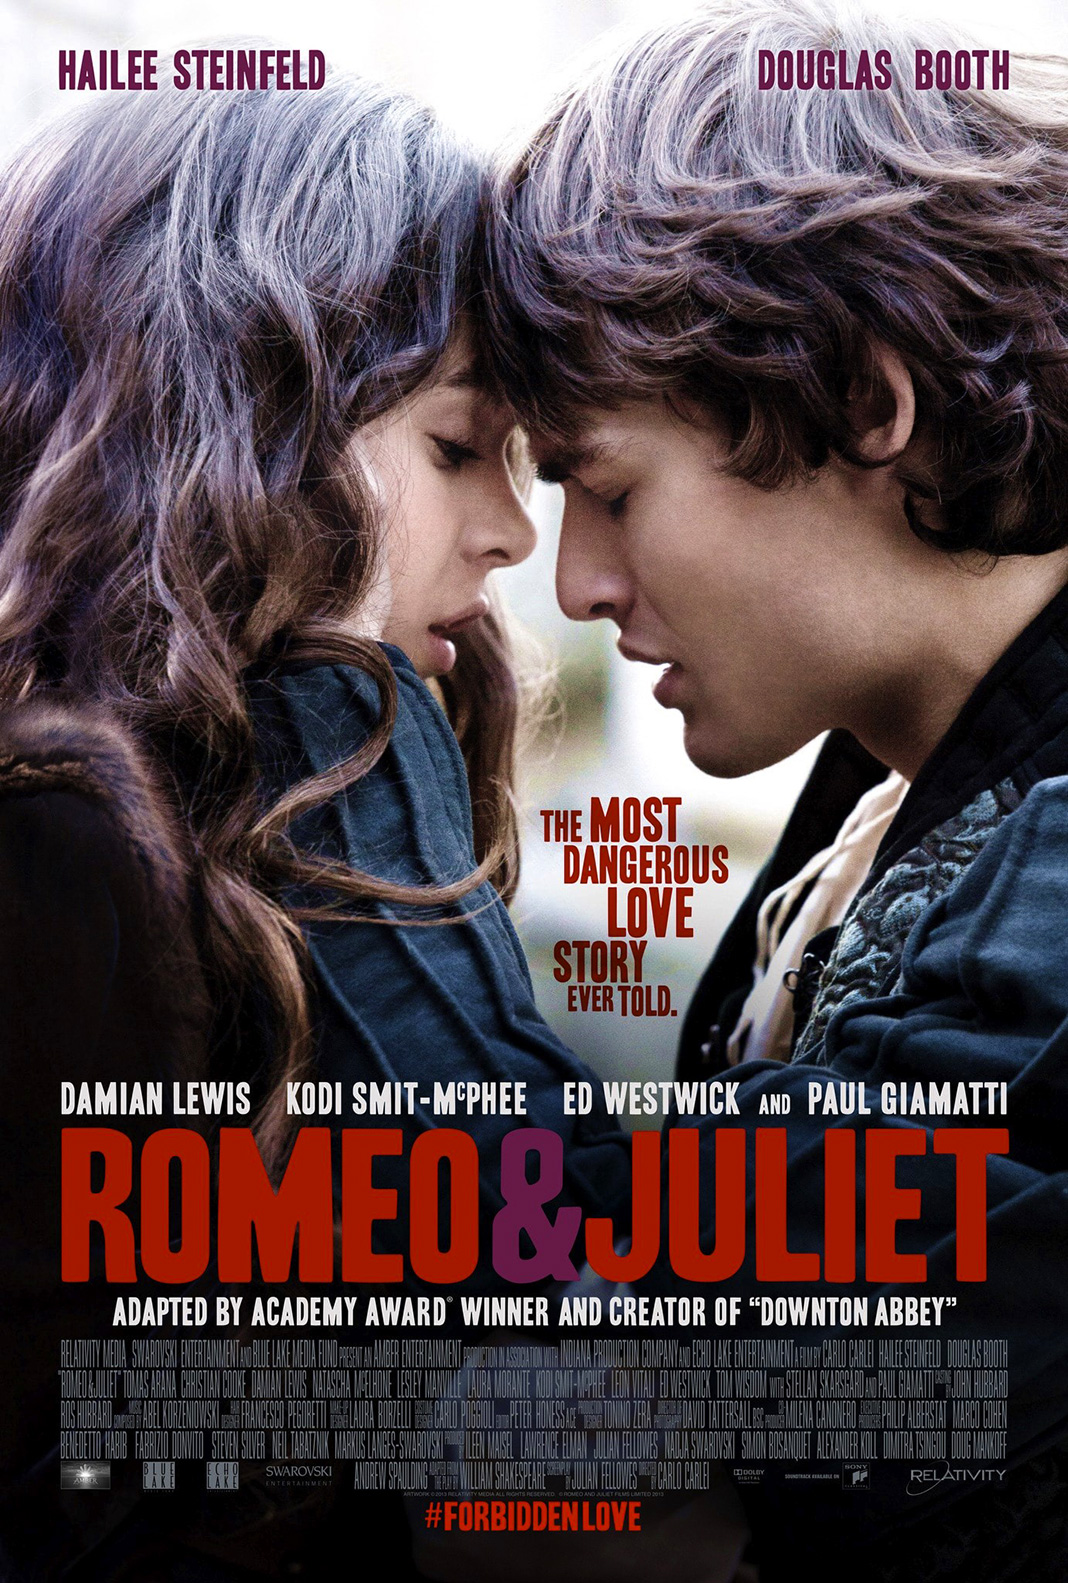 Хейли Стайнфелд, Дуглас Бут на постере к фильму «Ромео и Джульетта», 2013 г.